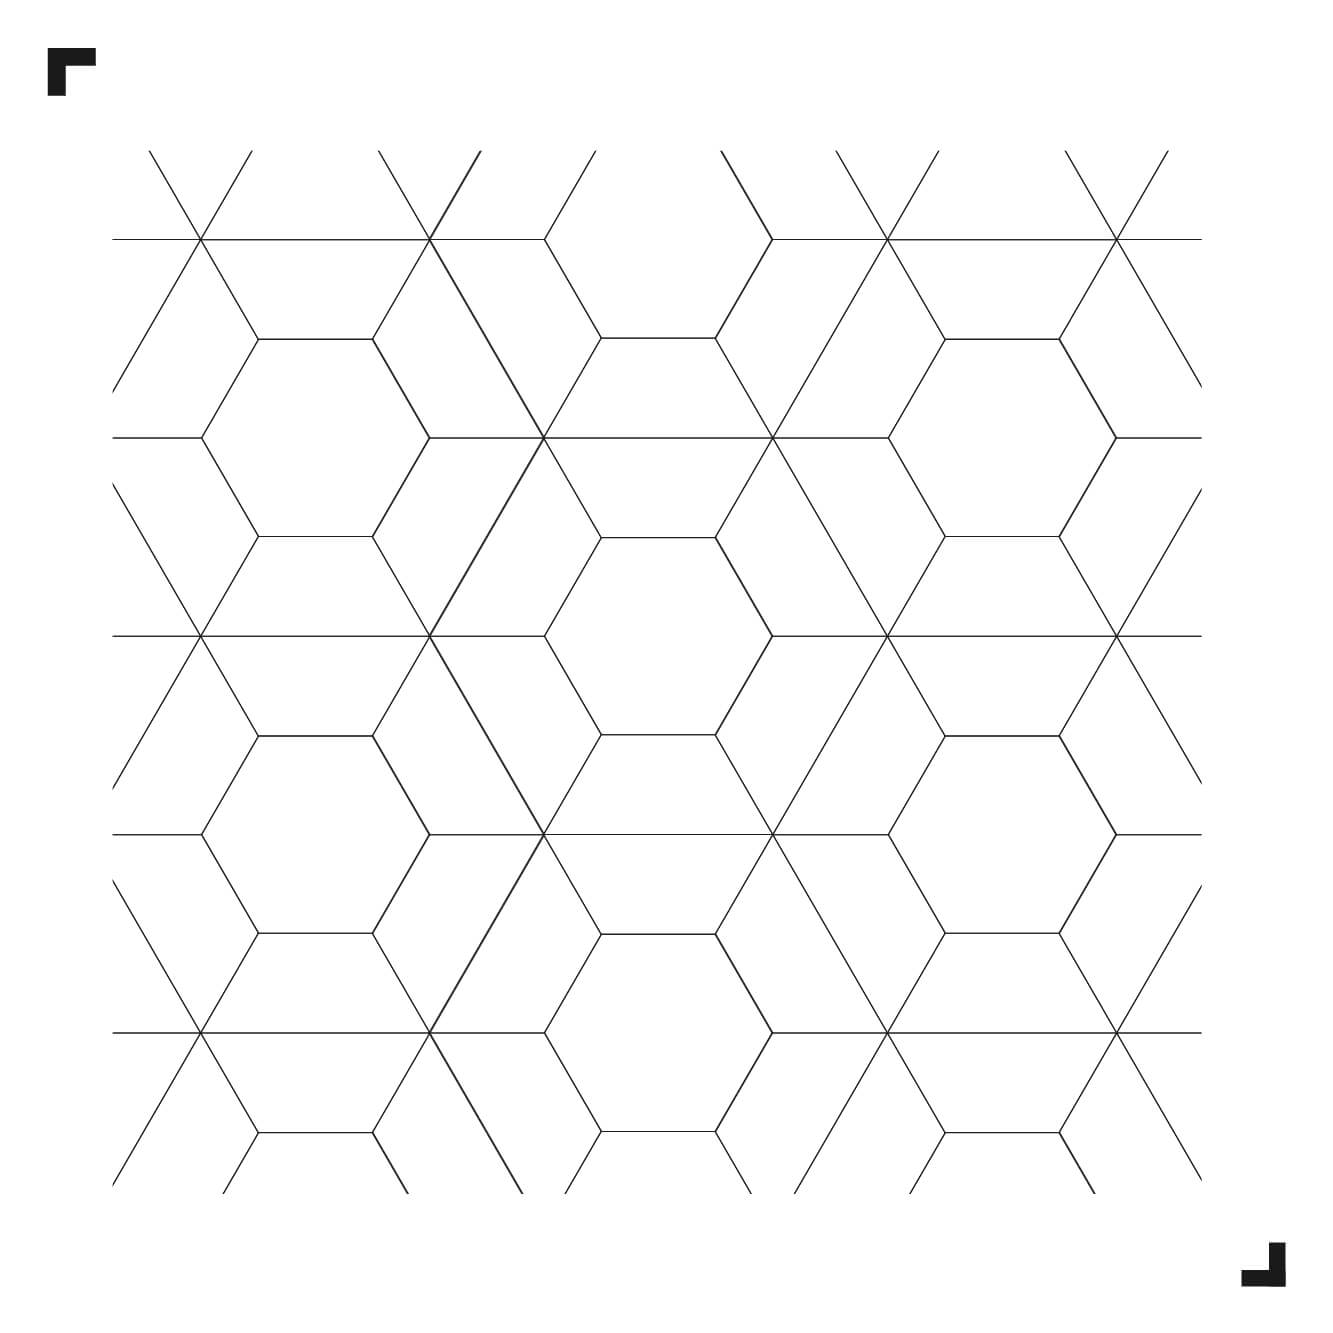 zwart-wit tekening van het Pepper patroon - Moduleo Moods - luxe vinyl tegels - Creatieve vloeren